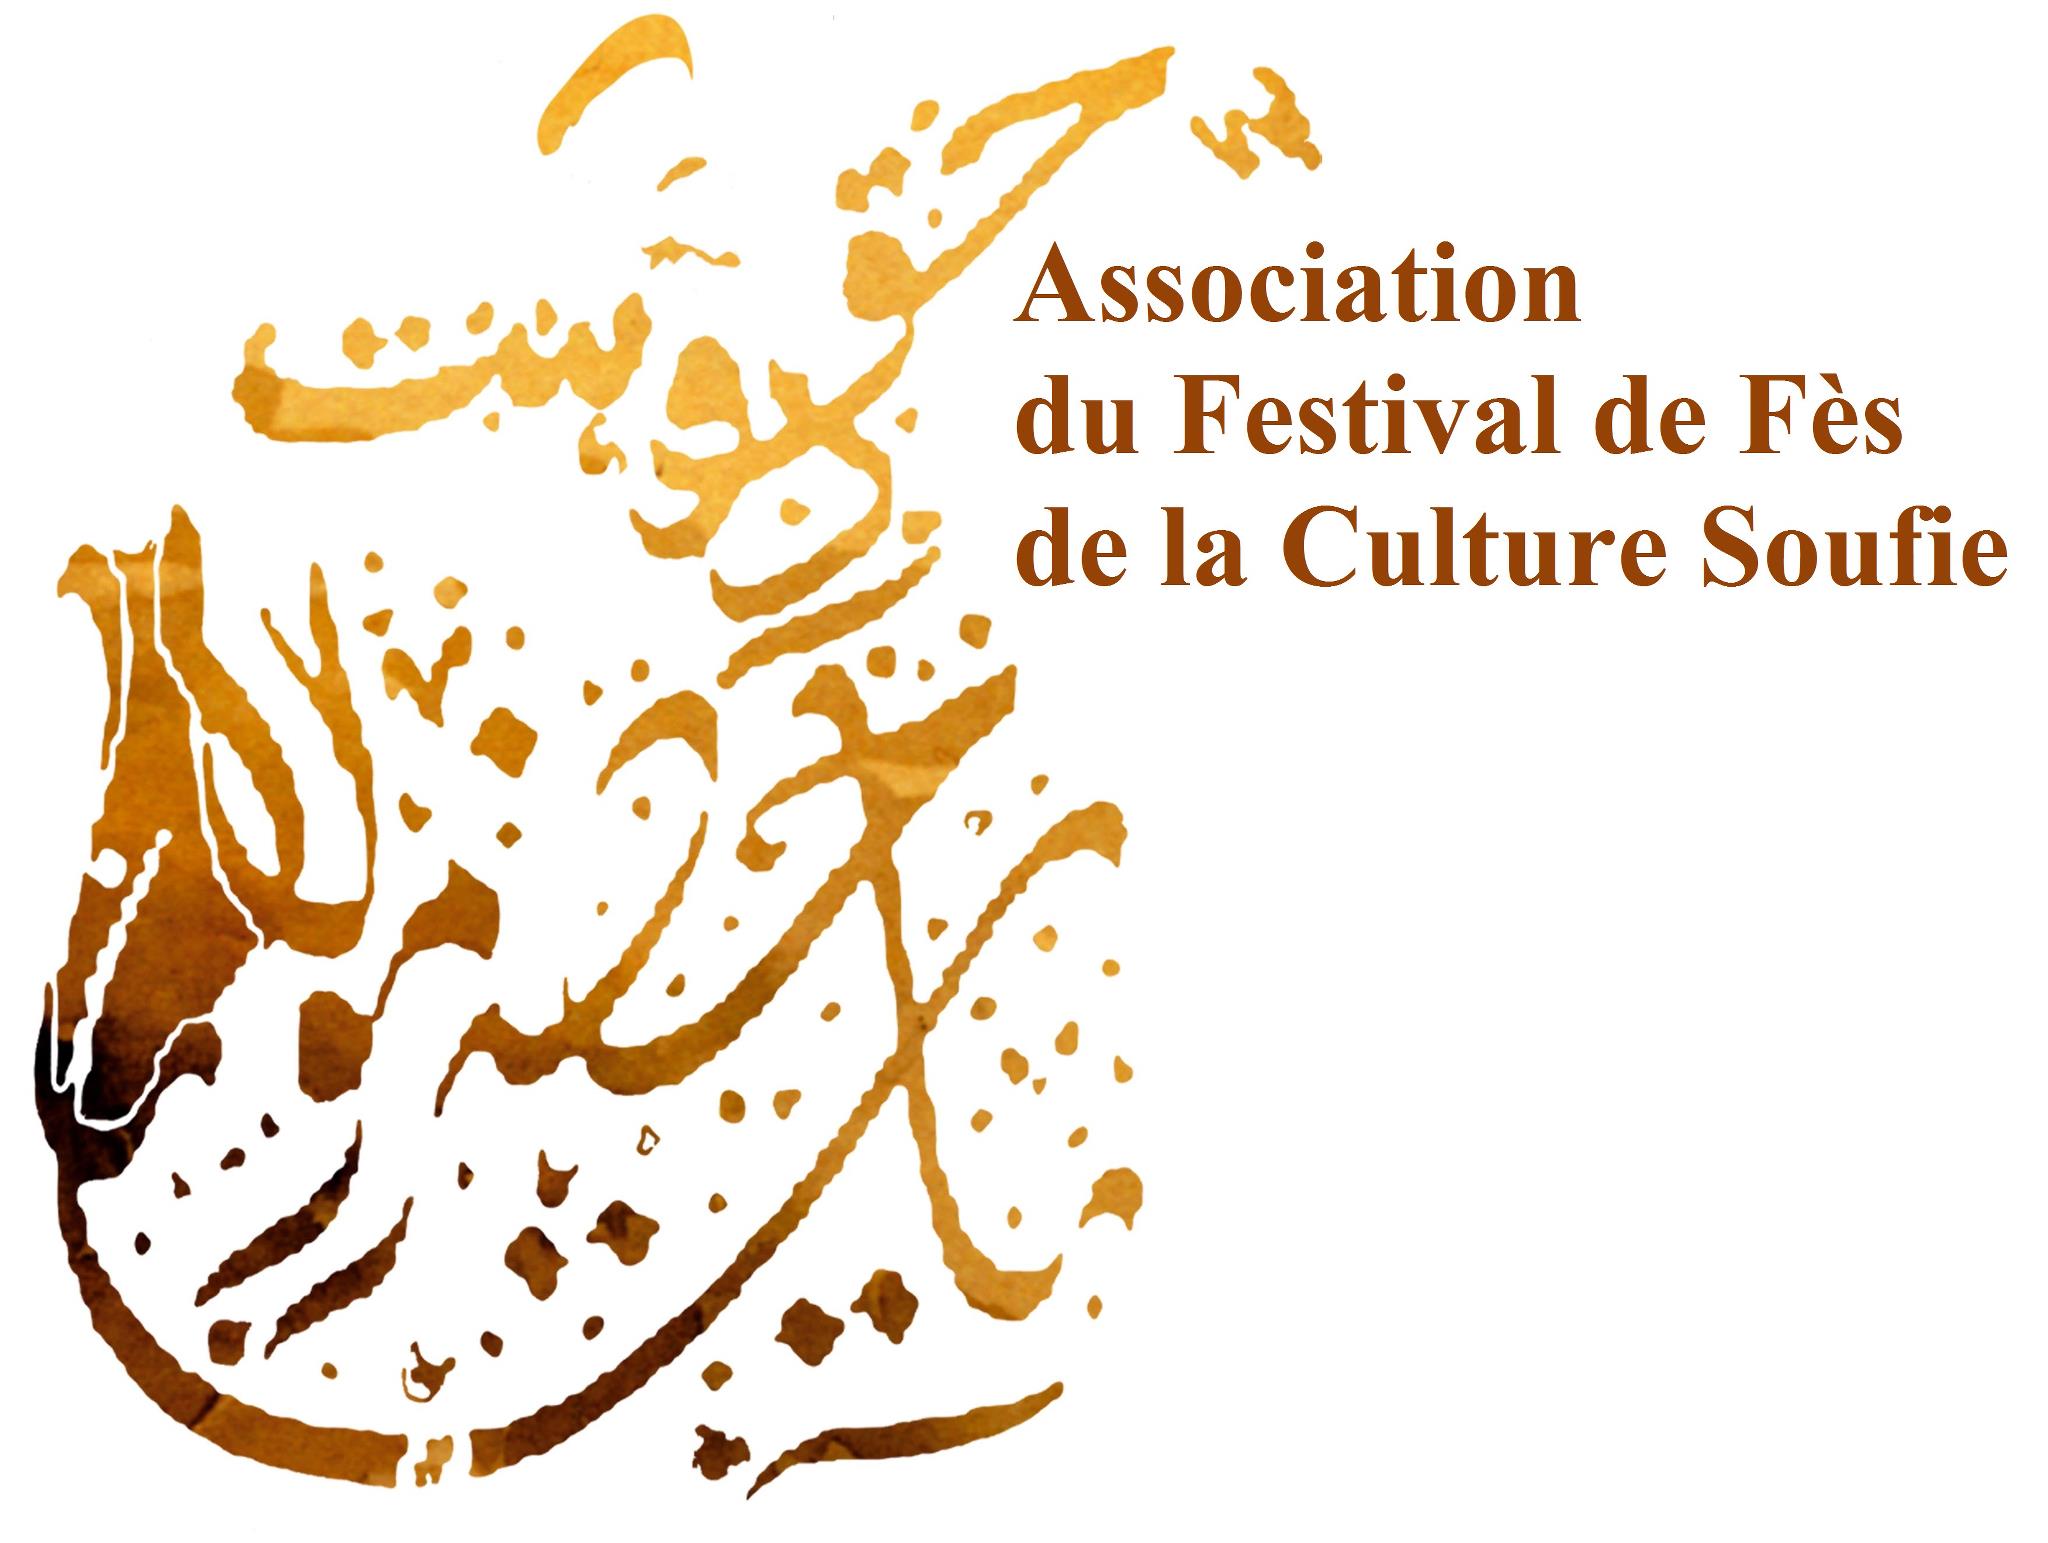 Association du Festival de Fes de la Culture Soufie